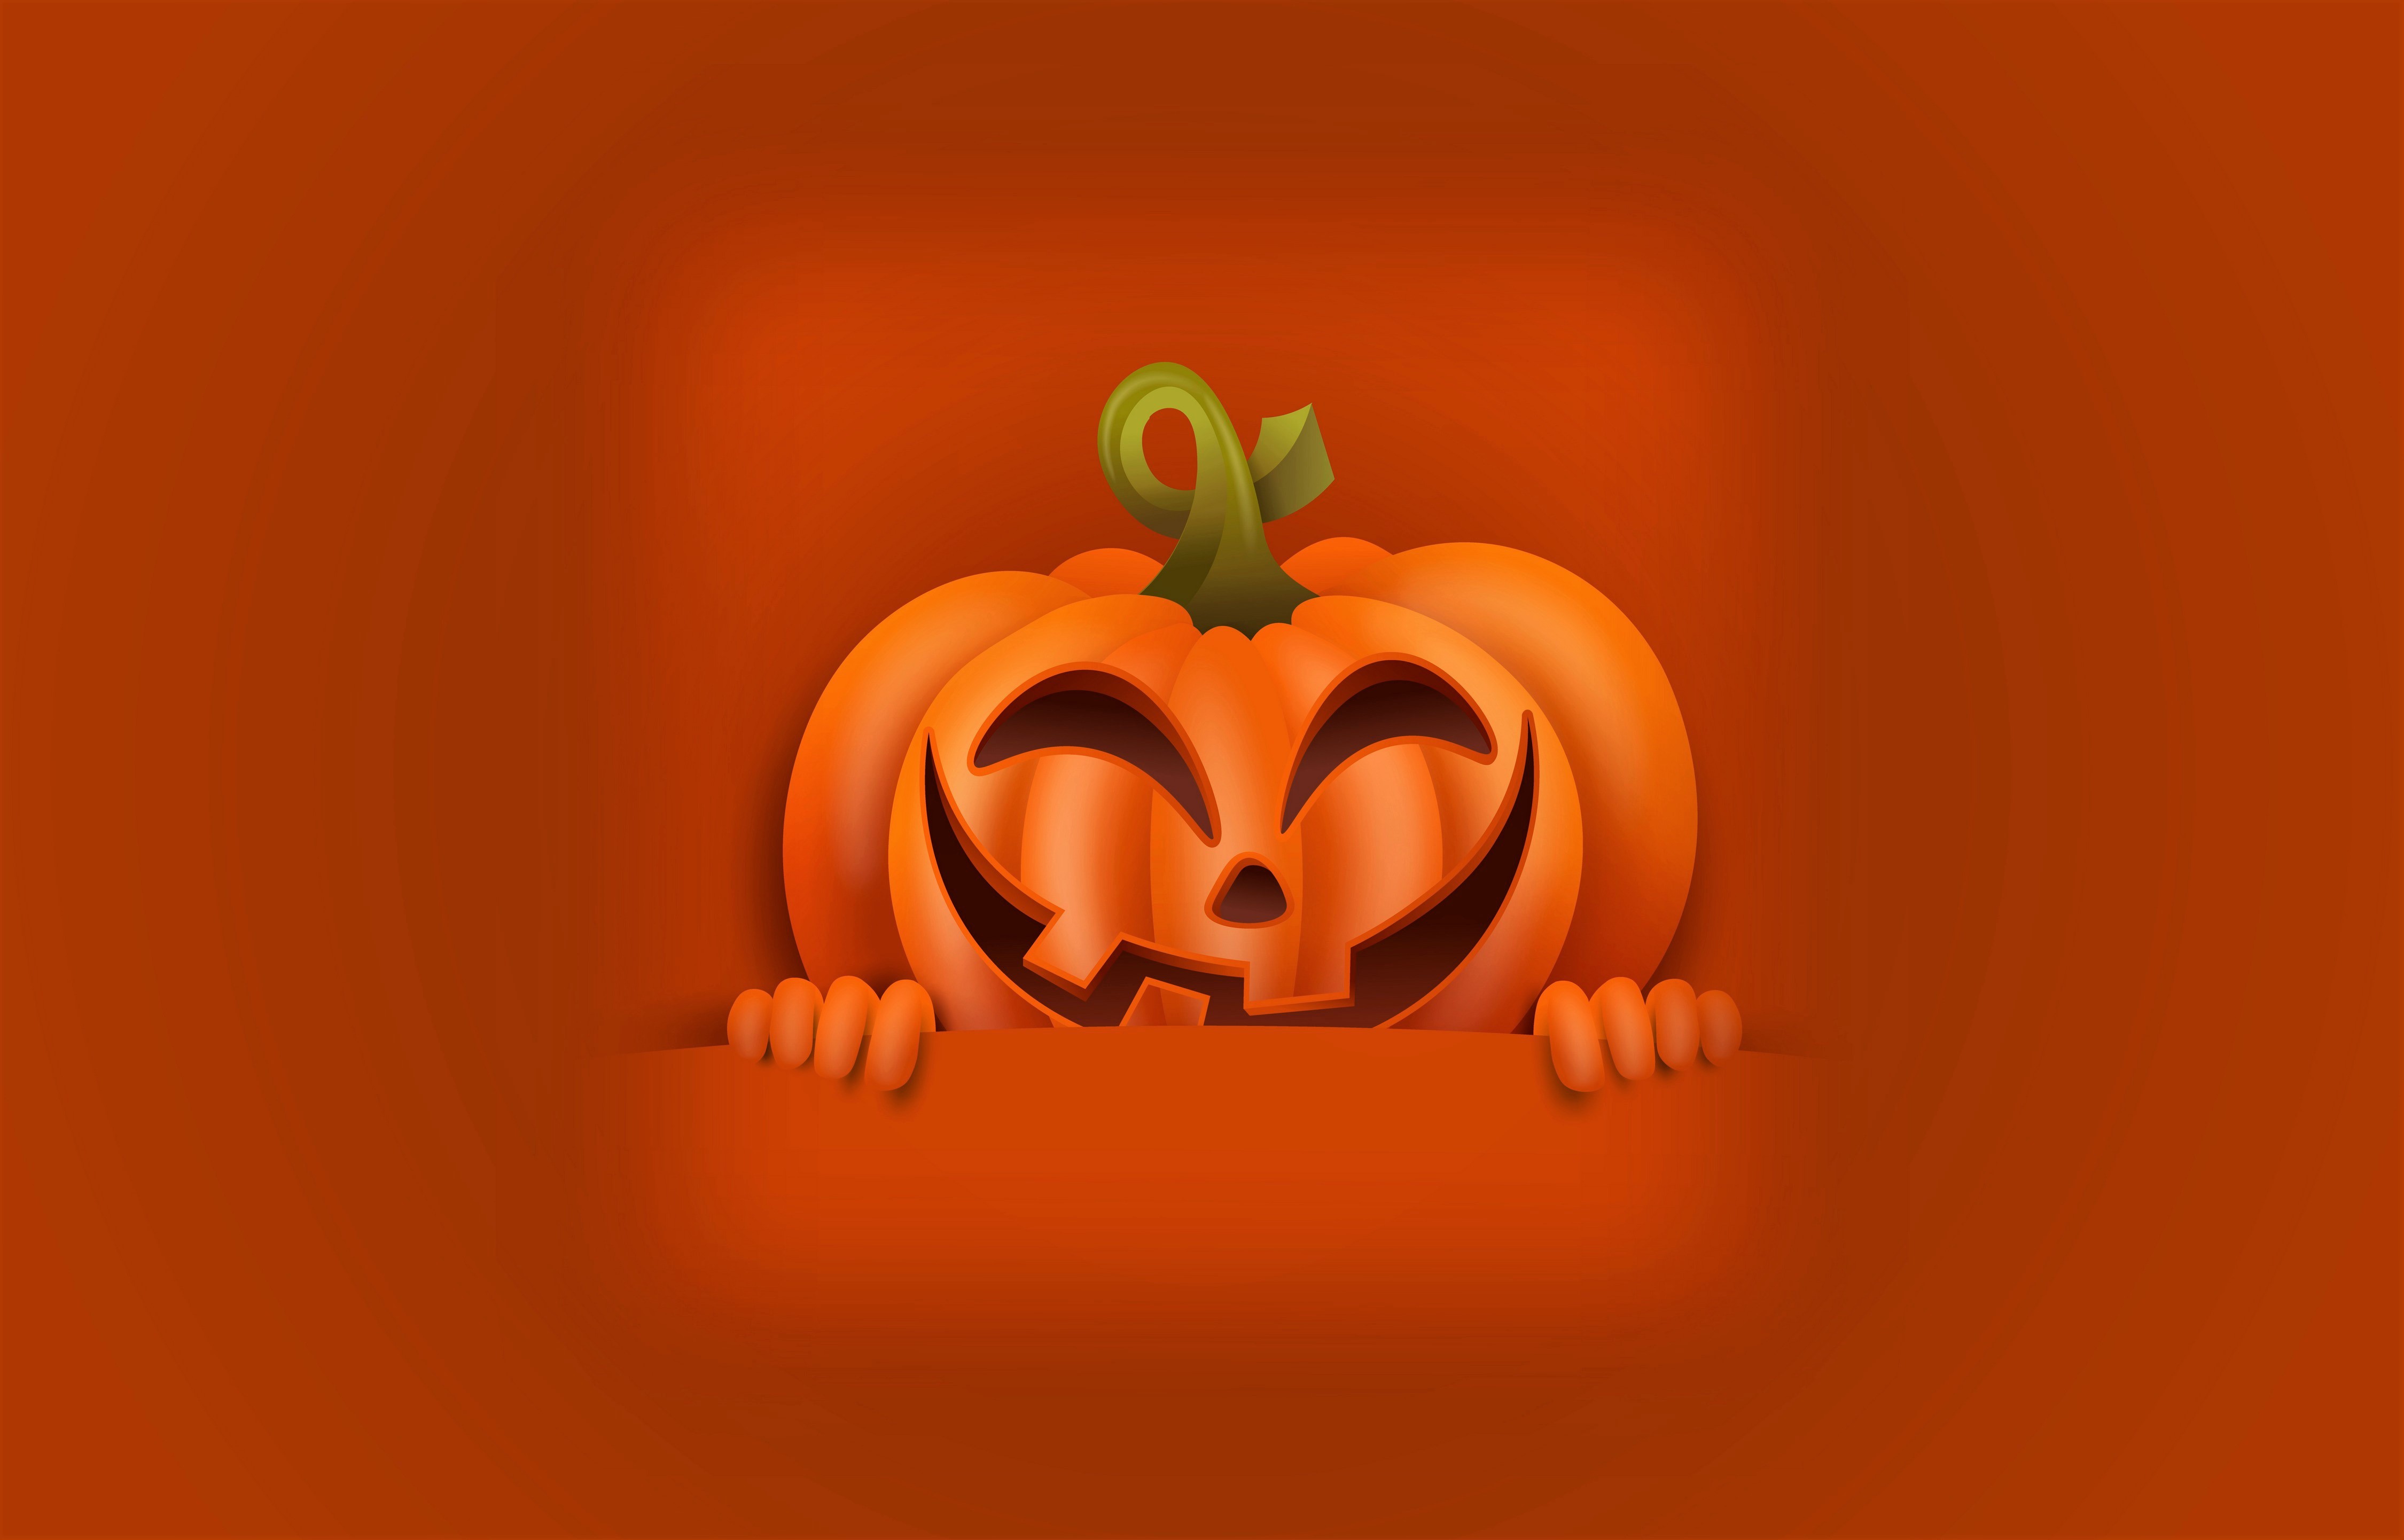 Скачать обои бесплатно Хэллоуин, Улыбка, Фонарь Джека, Праздничные, Оранжевый Цвет) картинка на рабочий стол ПК